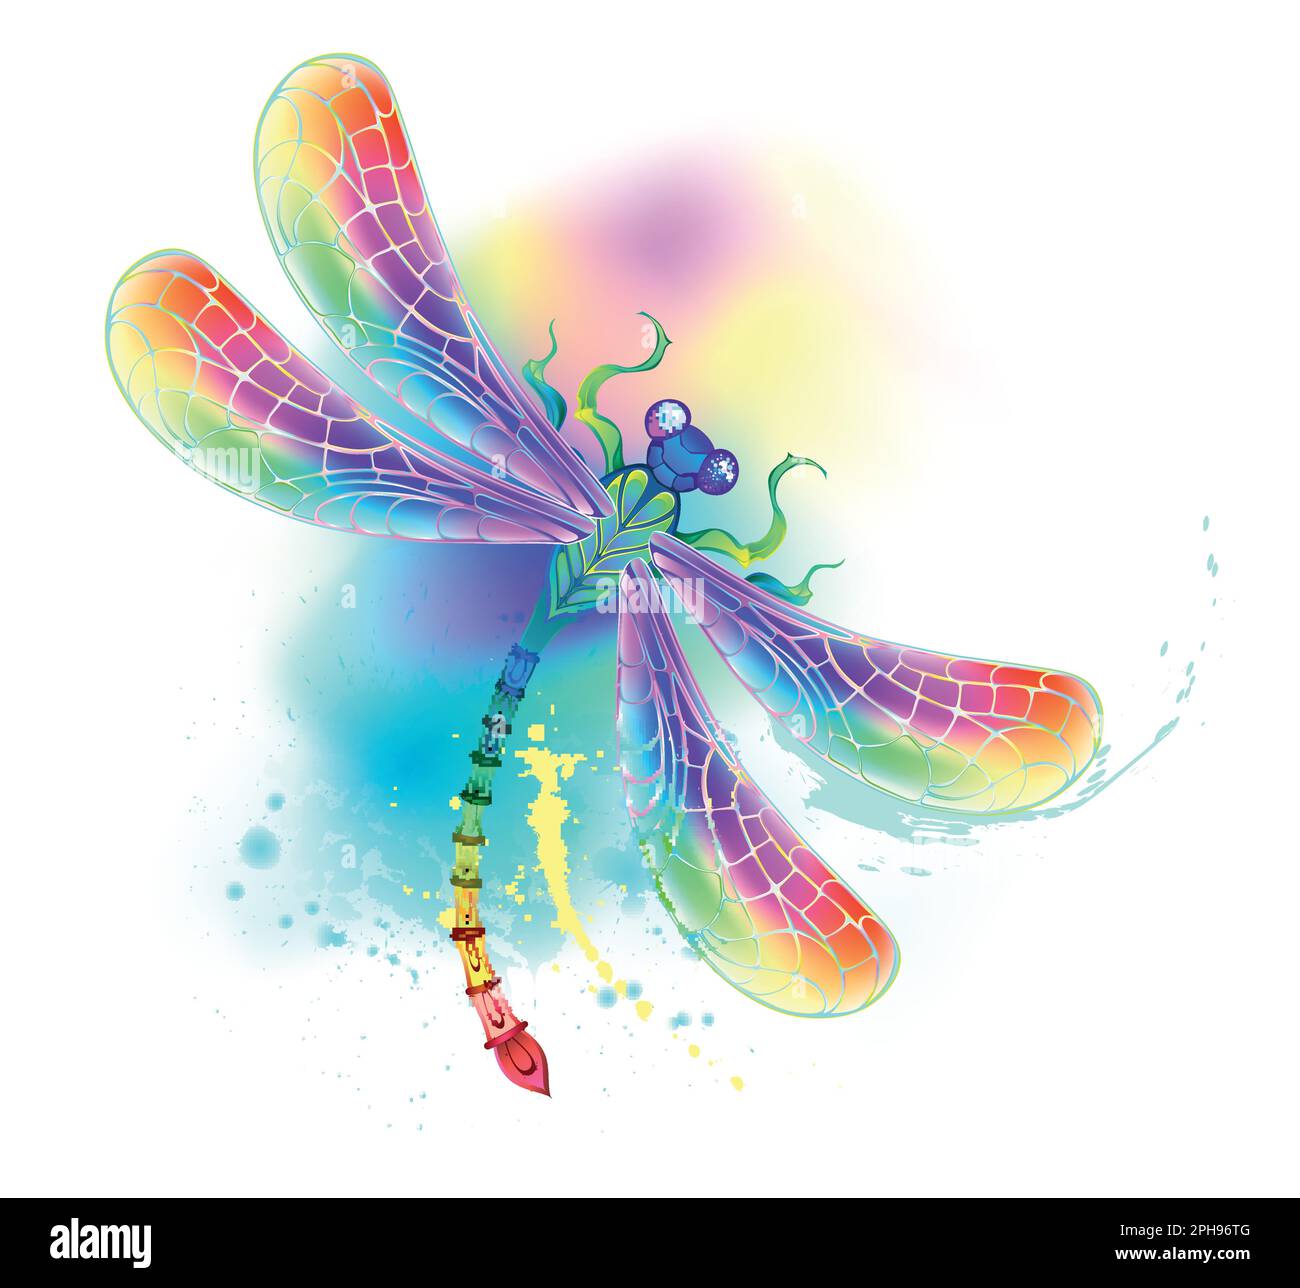 Regenbogen, gemustert, fliegend, künstlerisch gezeichnet, in leuchtenden Farben mit strukturierten schillernden Flügeln auf weißem Hintergrund, übermalt mit Wat-Spritzer Stock Vektor